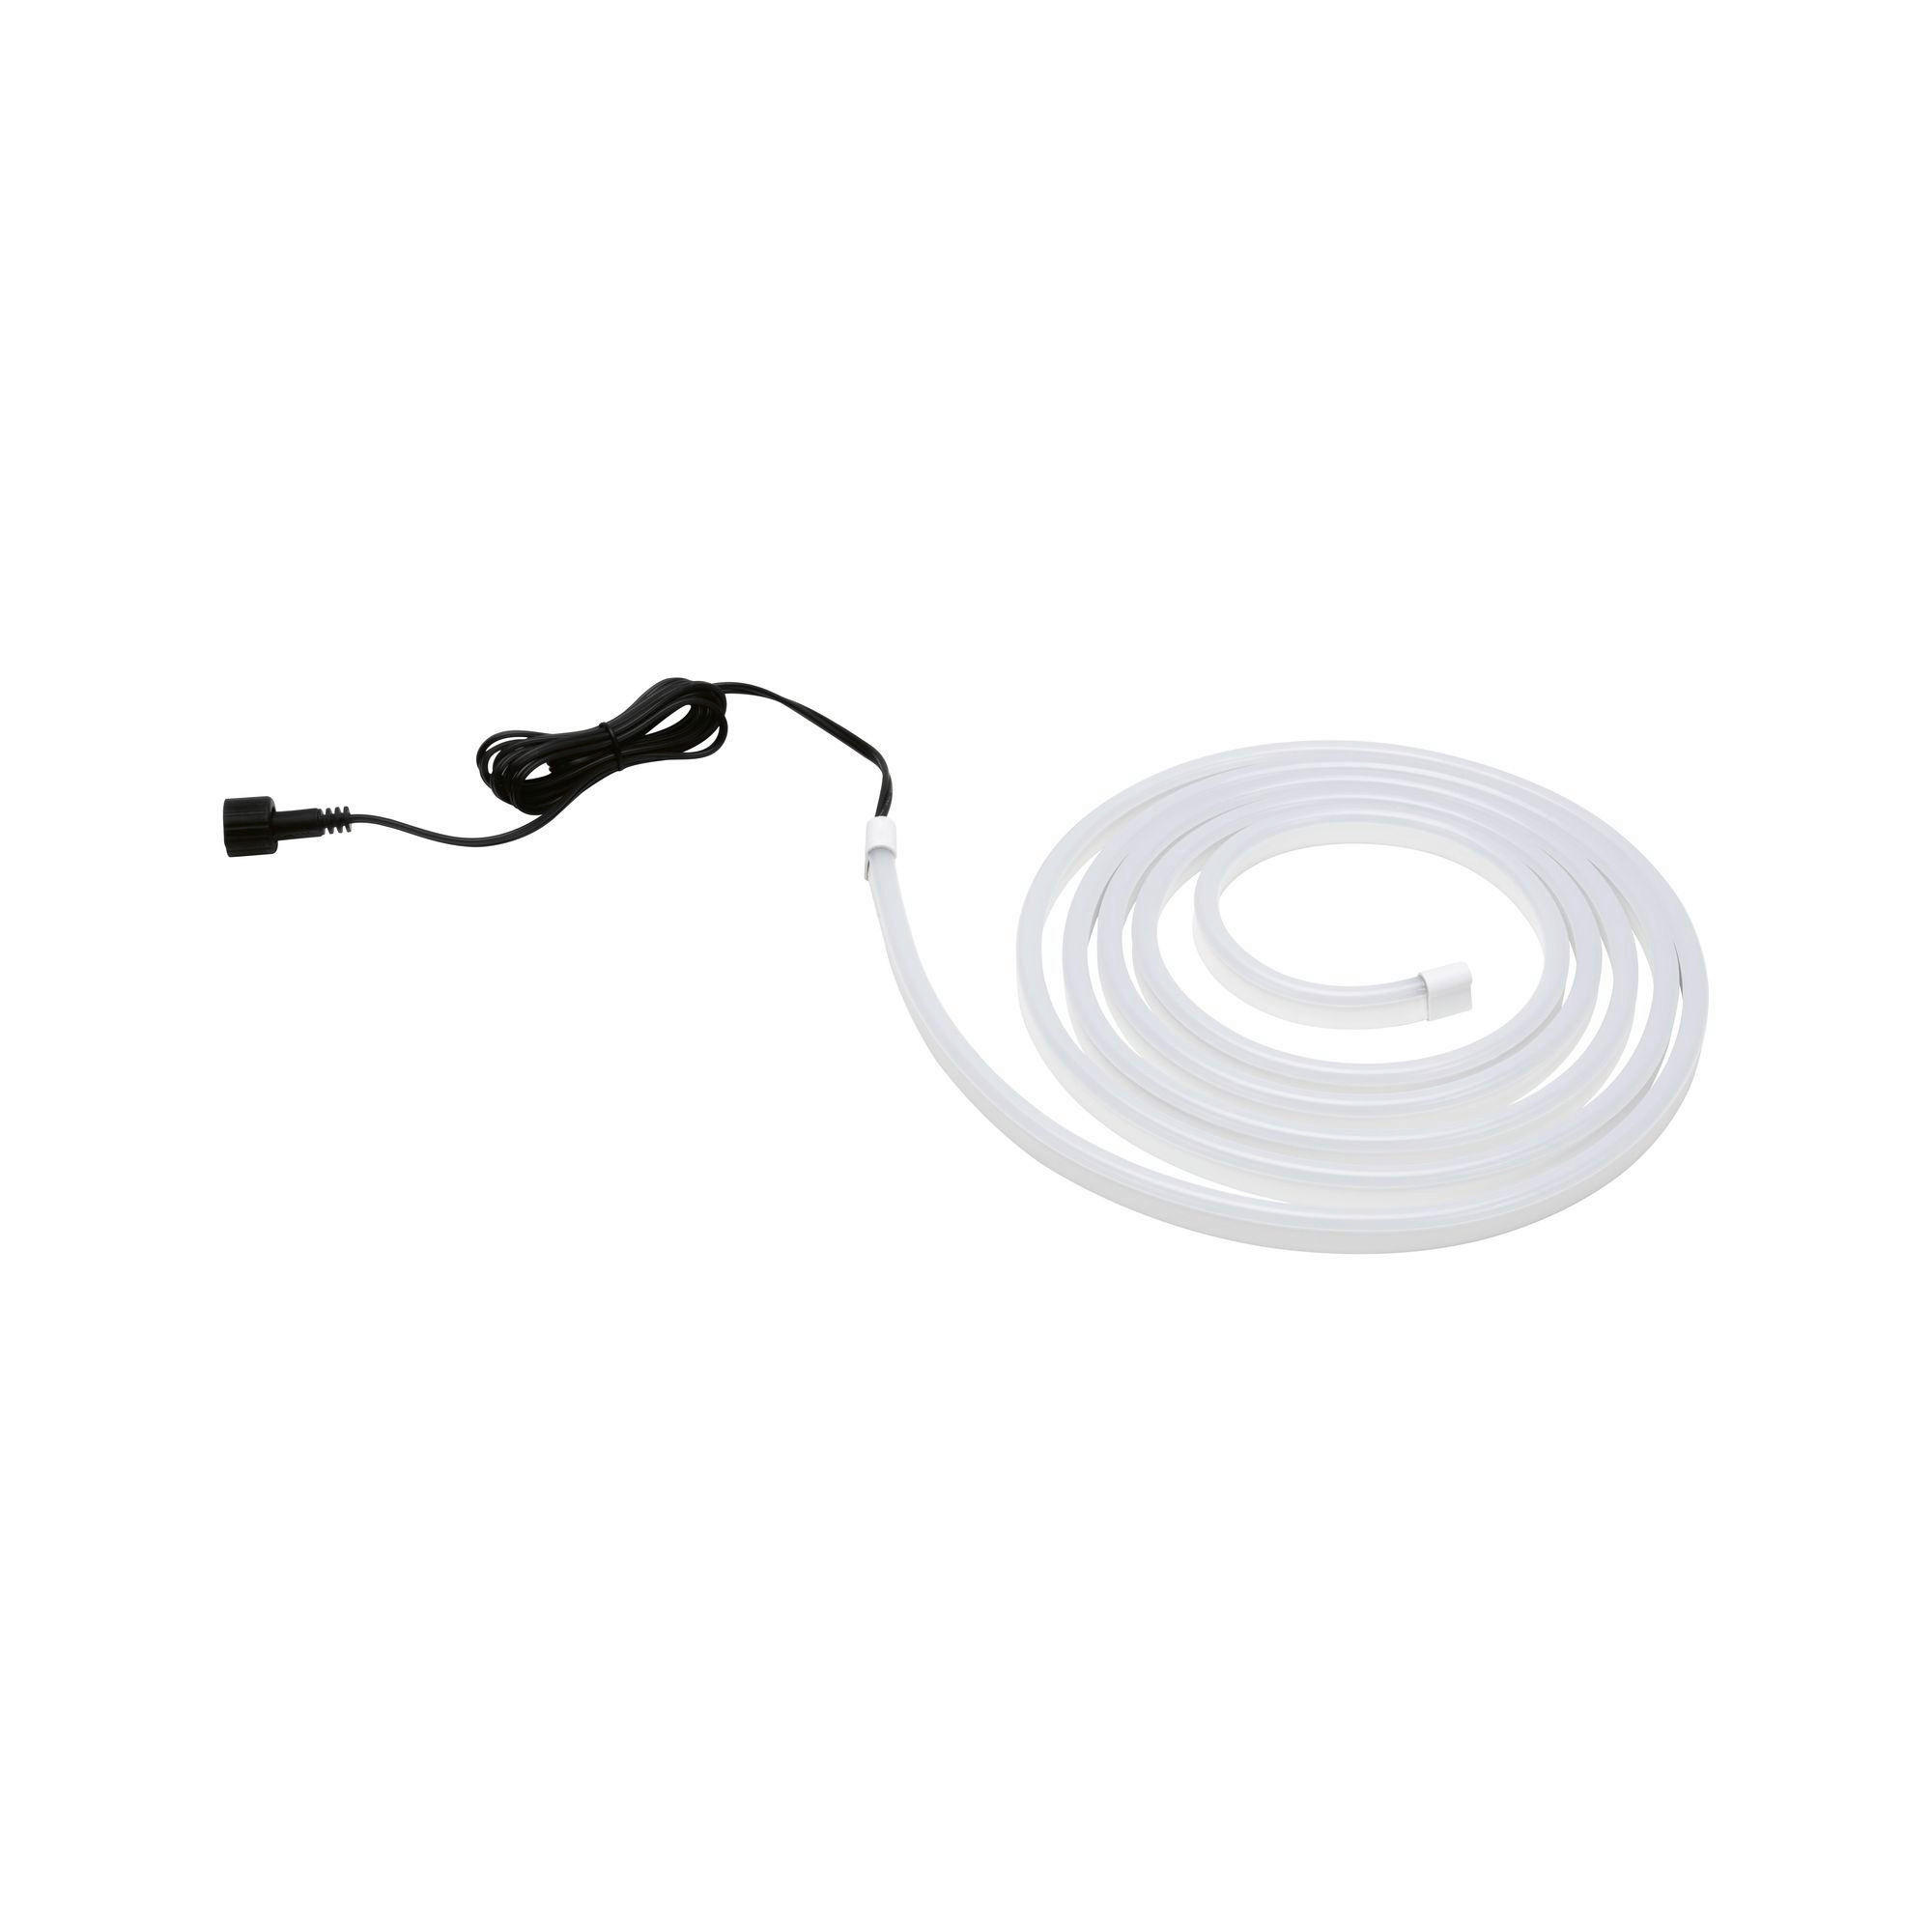 LED-STRIP 300 cm  - Weiß, Basics, Kunststoff (300cm) - Paulmann